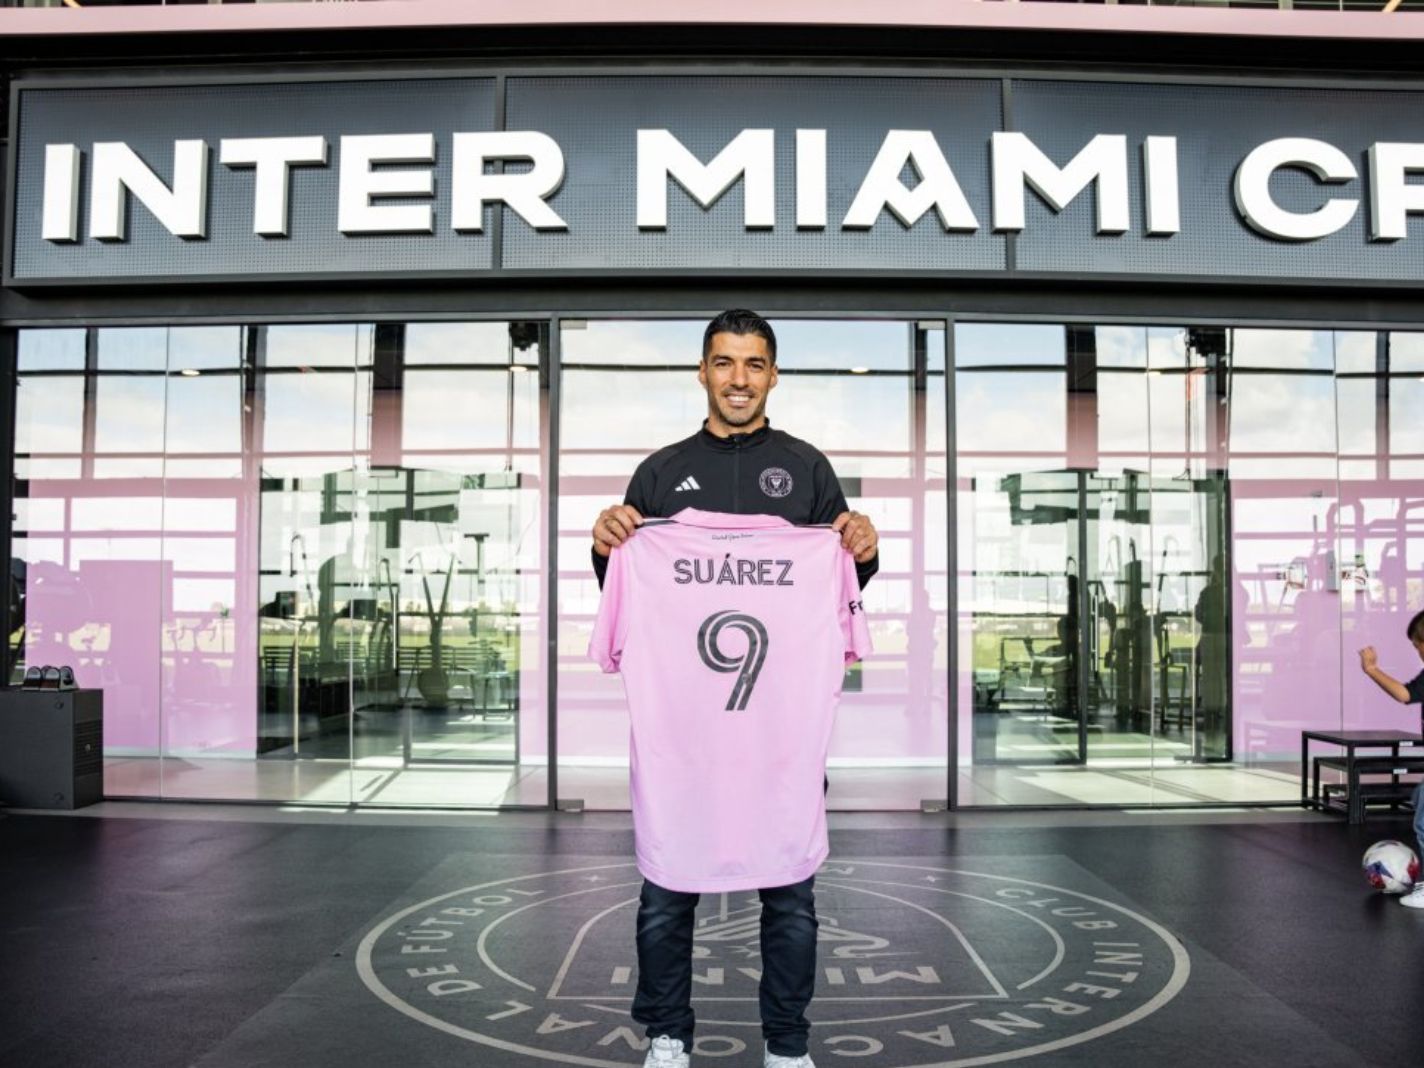 Why Luis Suarez Wore a DEBUT Logo on his Inter Miami Kit?